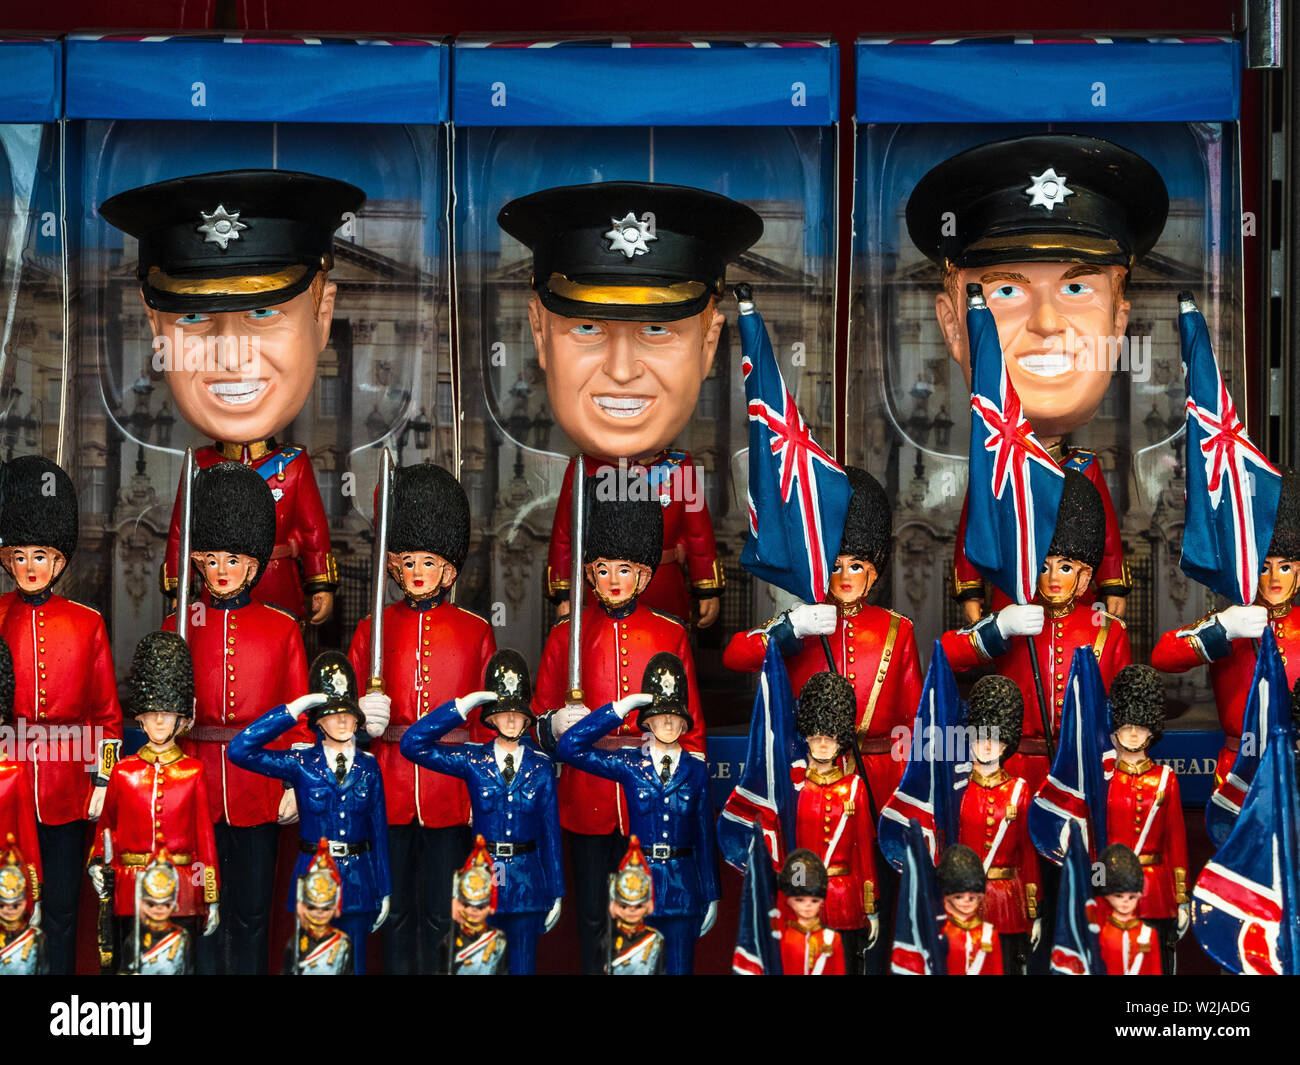 Modèle Prince William. La famille royale - jouets et souvenirs Prince William à vendre dans une boutique de souvenirs de Londres Banque D'Images